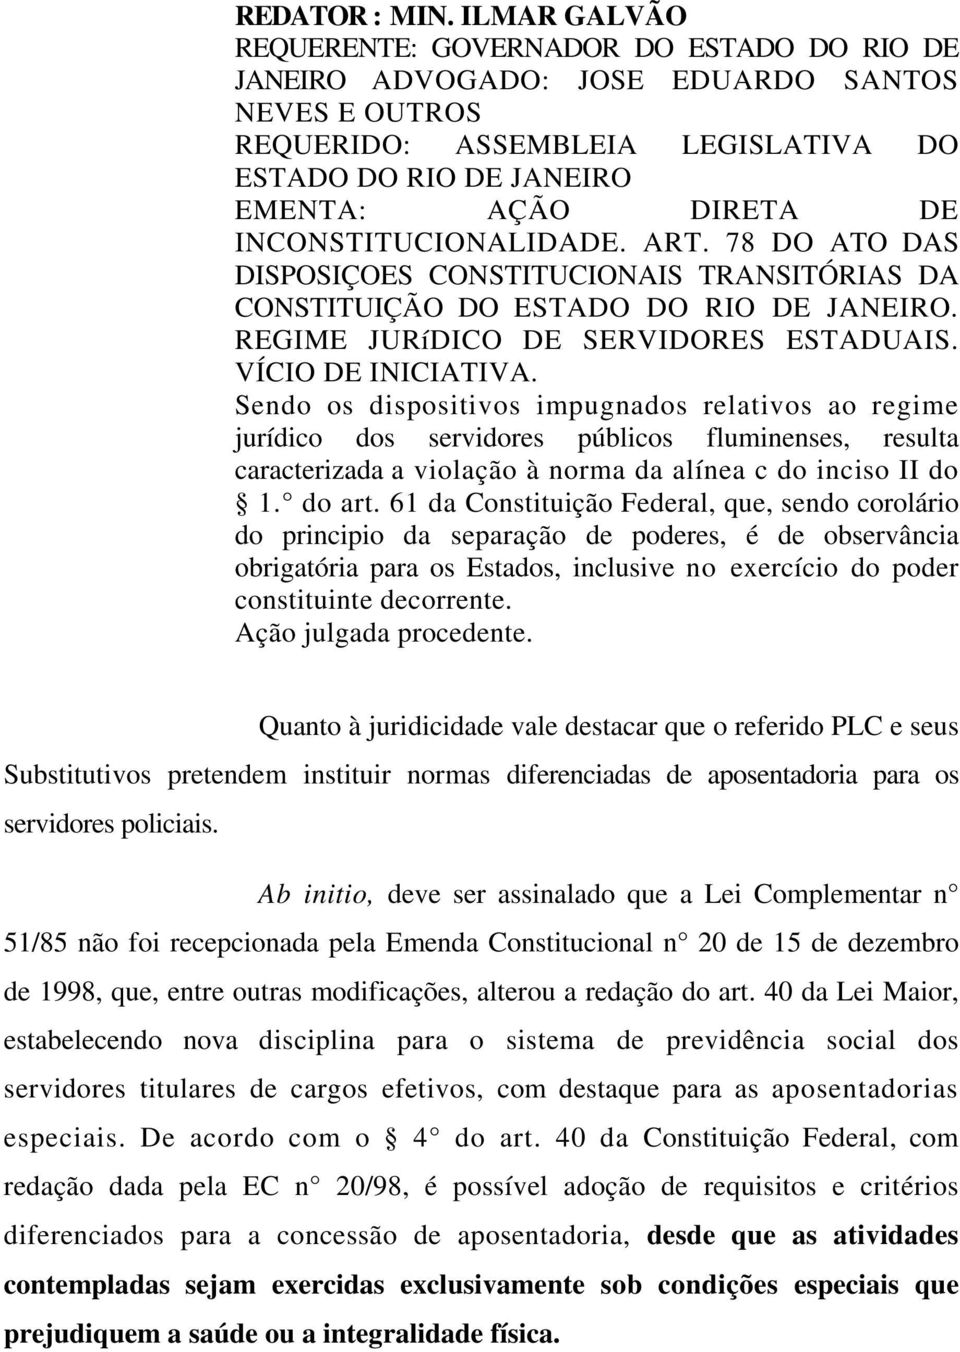 INCONSTITUCIONALIDADE. ART. 78 DO ATO DAS DISPOSIÇOES CONSTITUCIONAIS TRANSITÓRIAS DA CONSTITUIÇÃO DO ESTADO DO RIO DE JANEIRO. REGIME JURíDICO DE SERVIDORES ESTADUAIS. VÍCIO DE INICIATIVA.